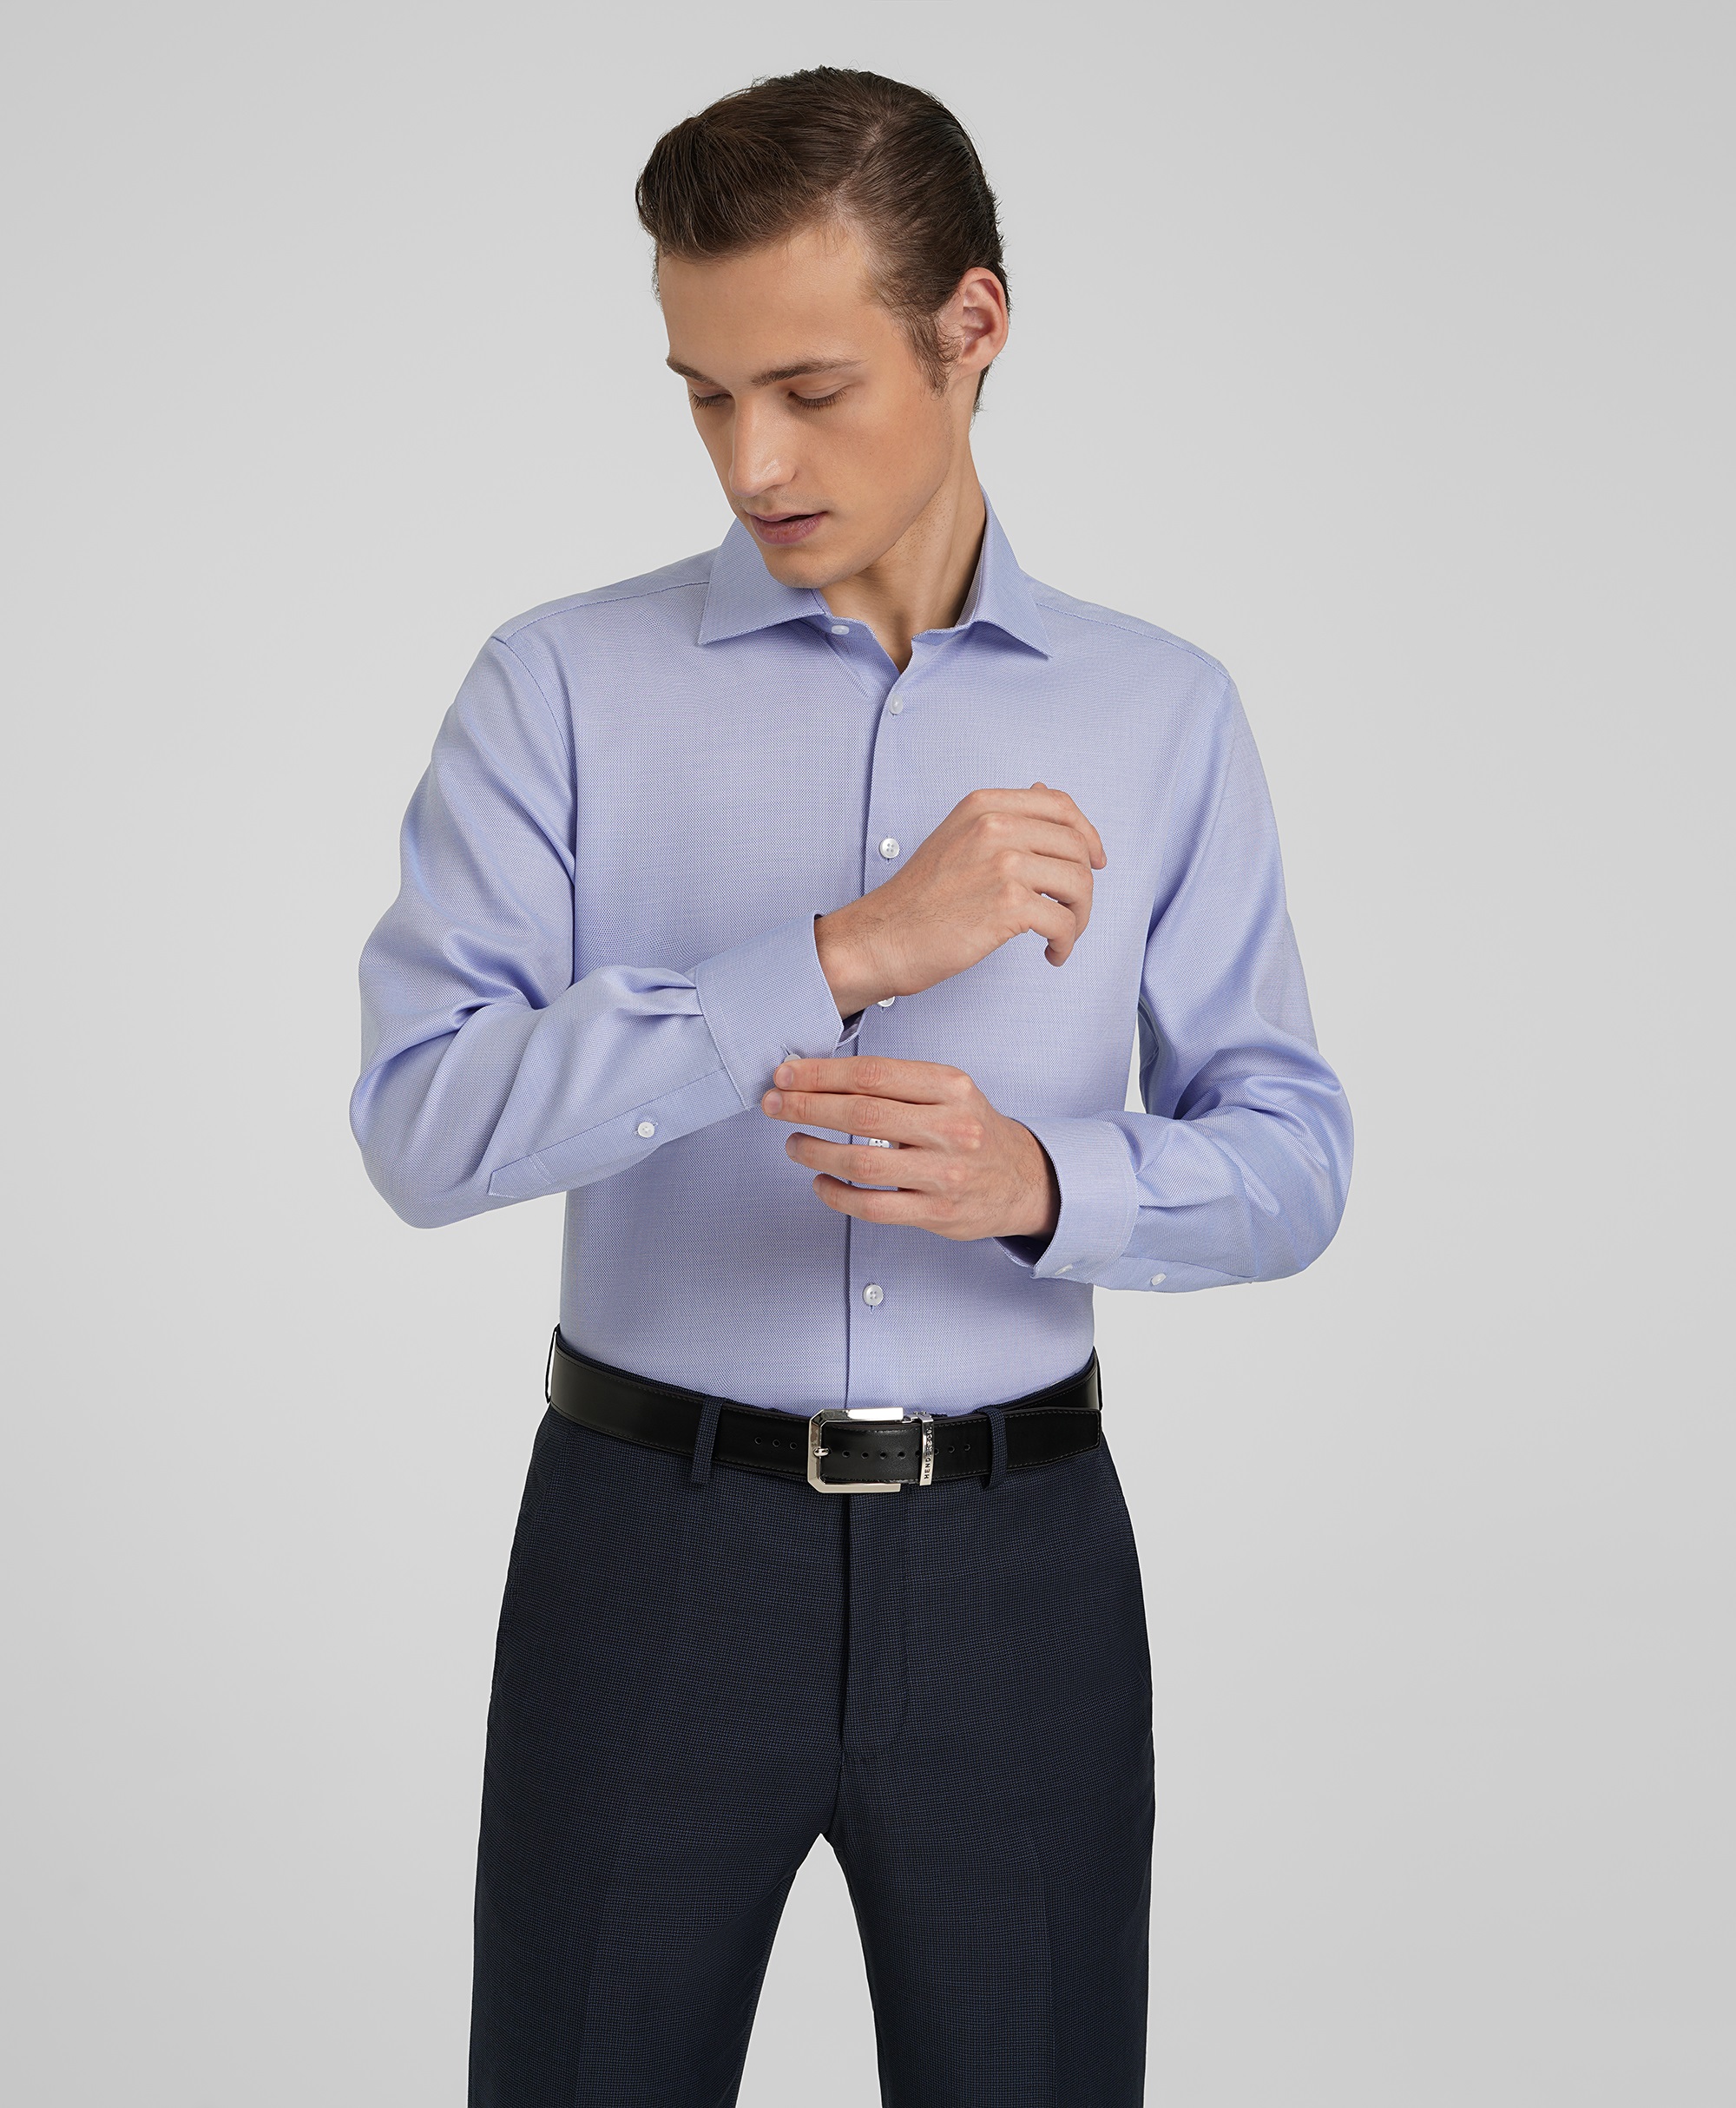 Рубашка прямого кроя из 100% хлопка, не требует утюжки в голубом цвете  SHL-1920-N BLUE- купить в HENDERSON.RU, цена 3 495 ₽